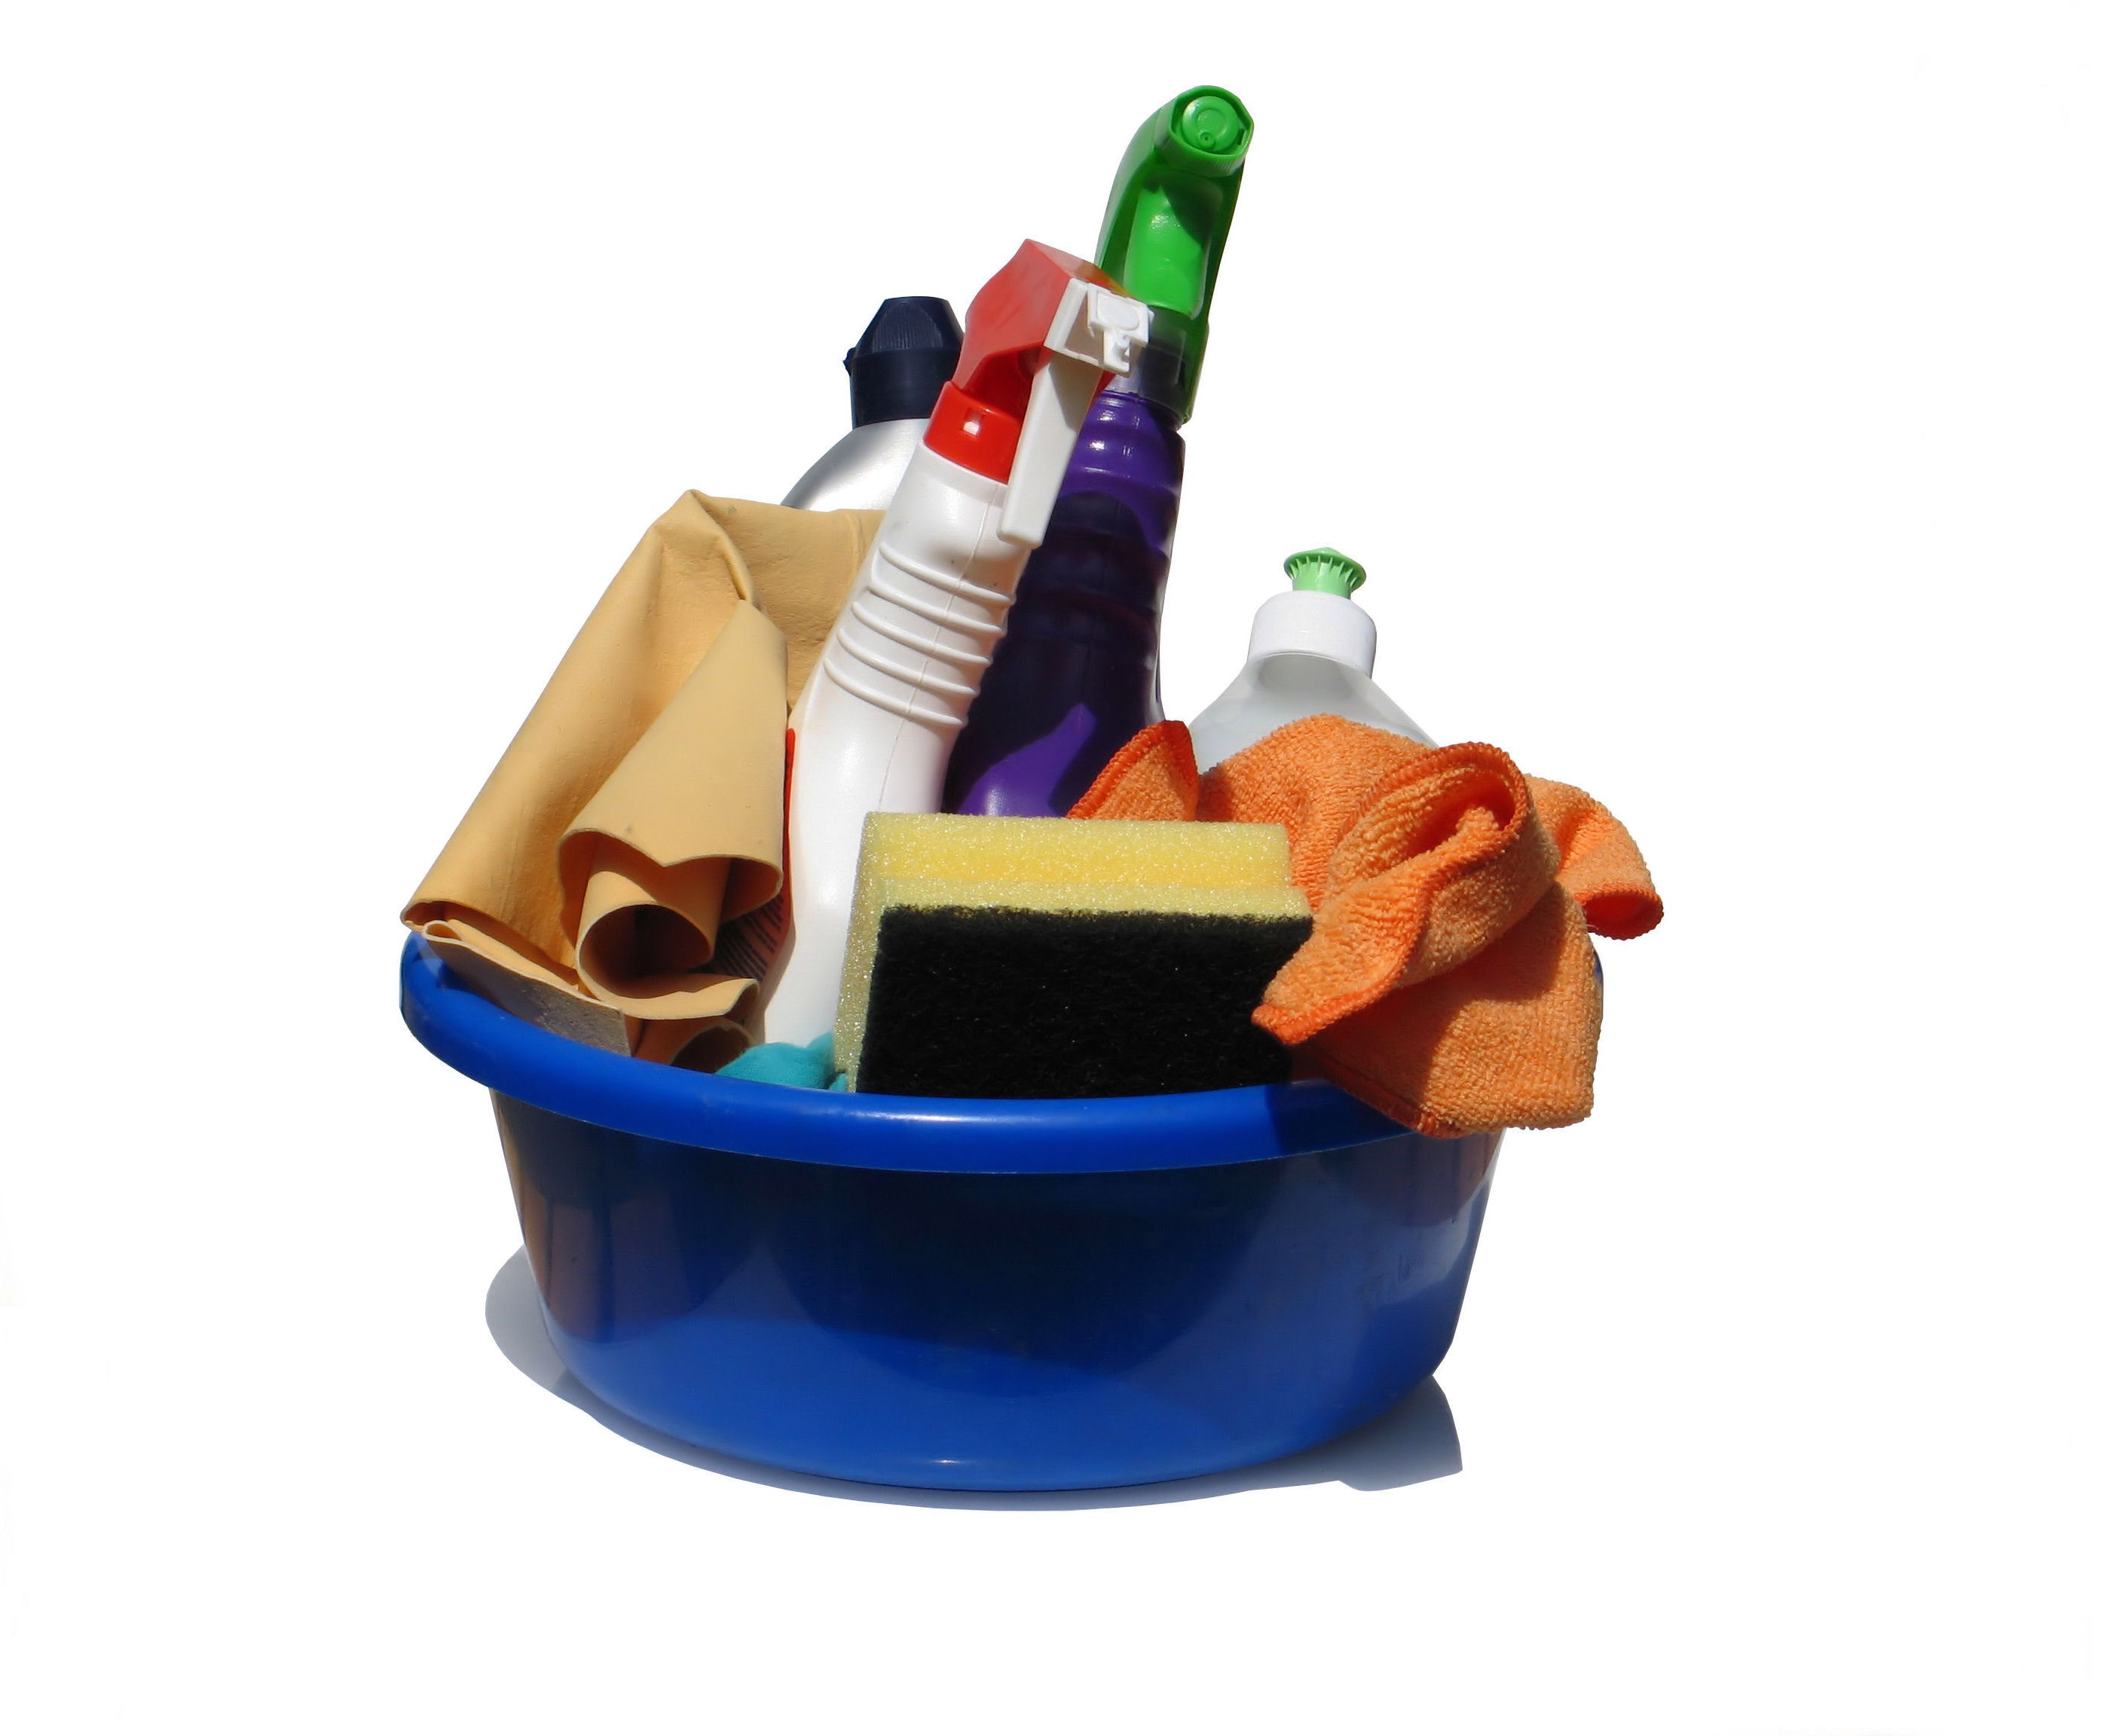 Социологическо доказано - най-неприятните домакински дейности са разни видове чистене